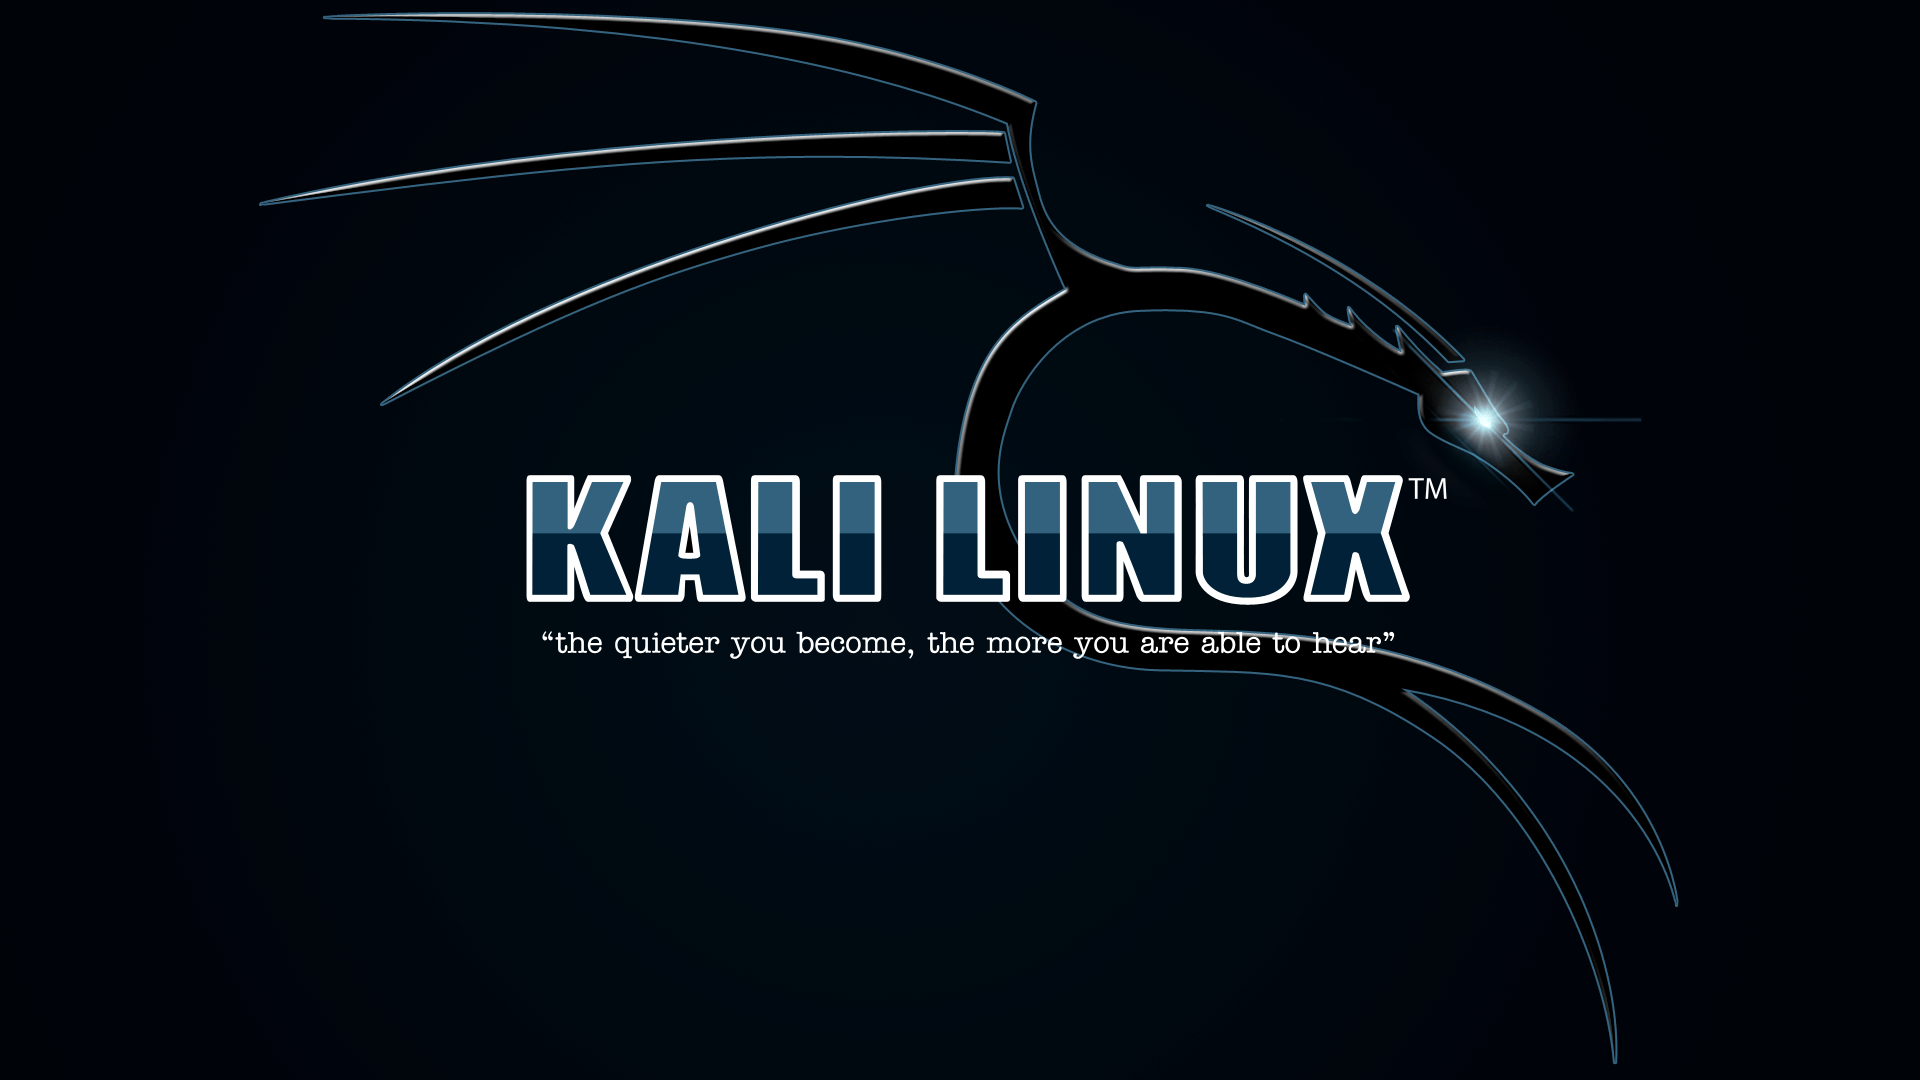 Free Kali Linux Wallpaper Downloads 100 Kali Linux Wallpapers for FREE   Wallpaperscom